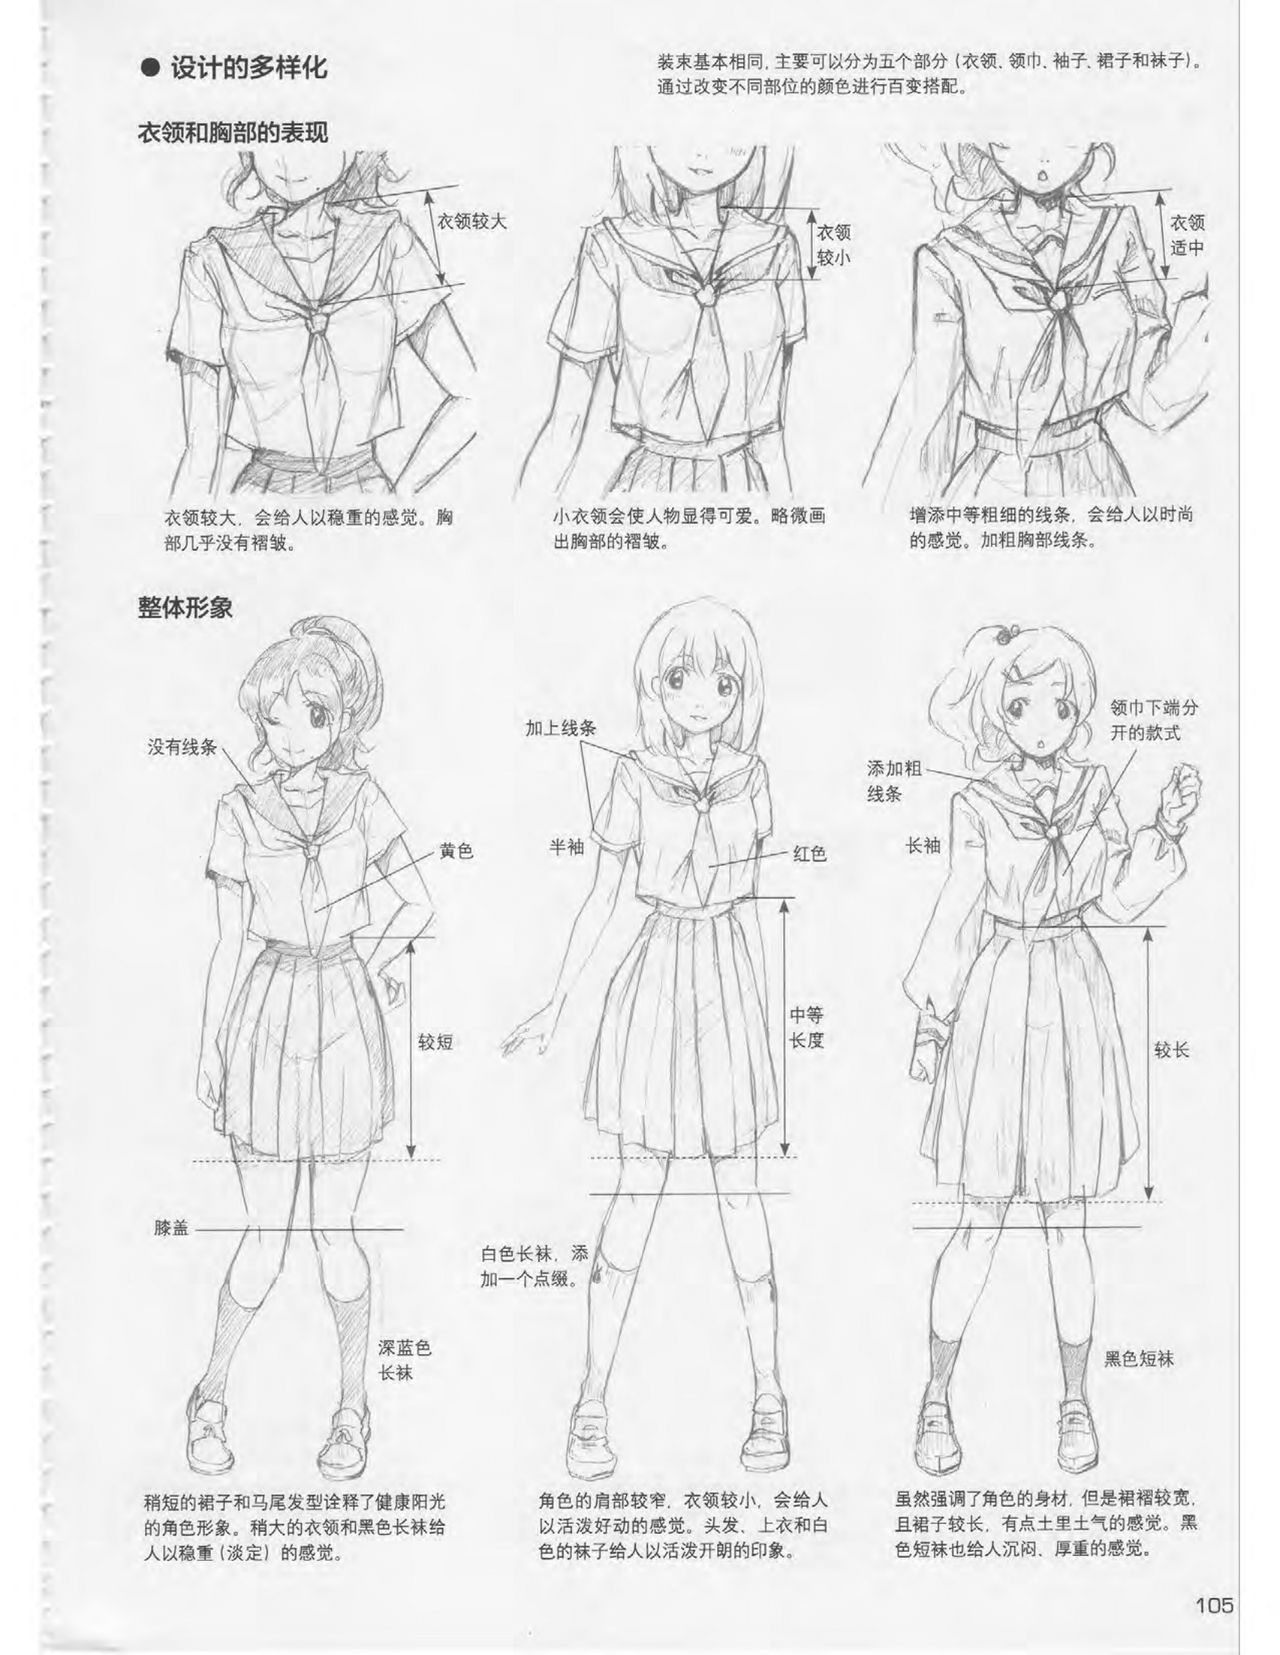 Japanese Manga Master Lecture 3: Lin Akira and Kakumaru Maru Talk About Glamorous Character Modeling 105